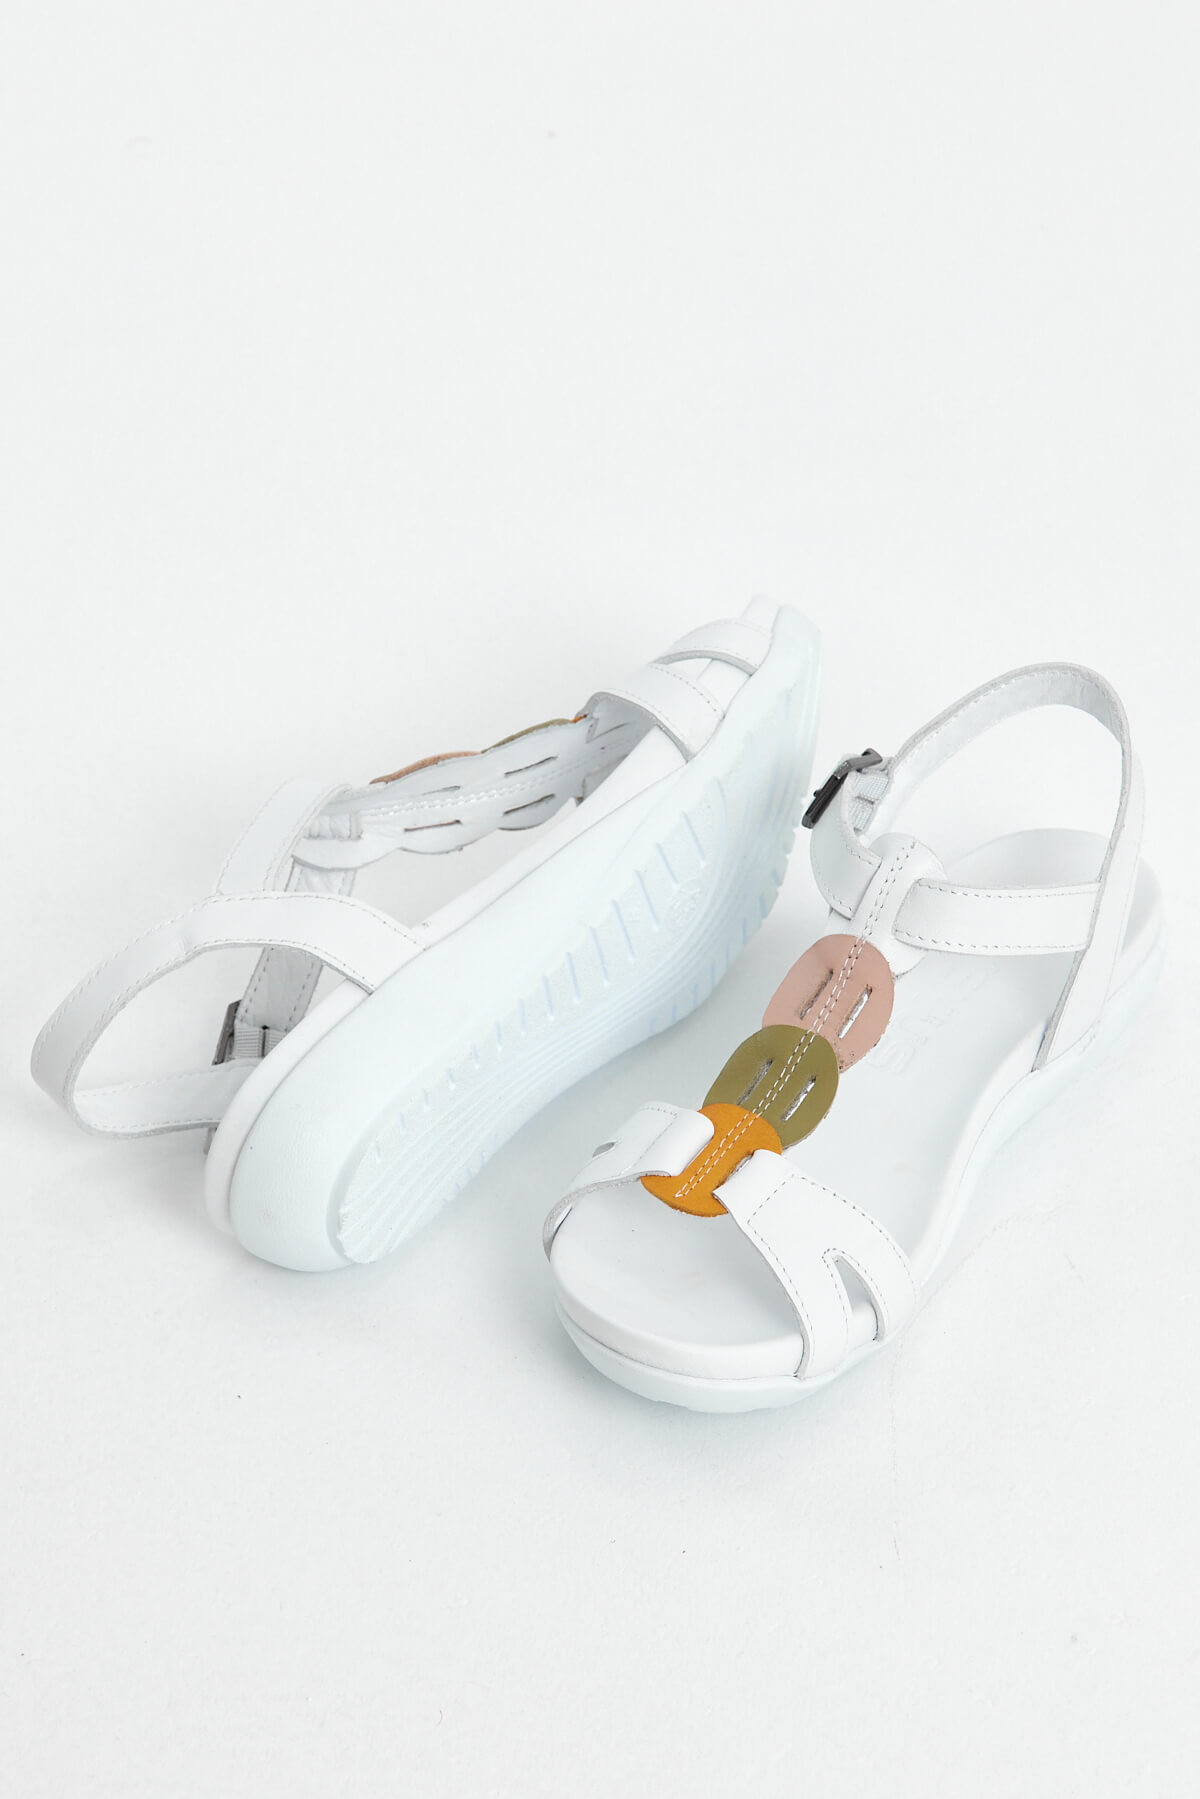 Kadın Comfort Deri Sandalet Beyaz 297Y - Thumbnail